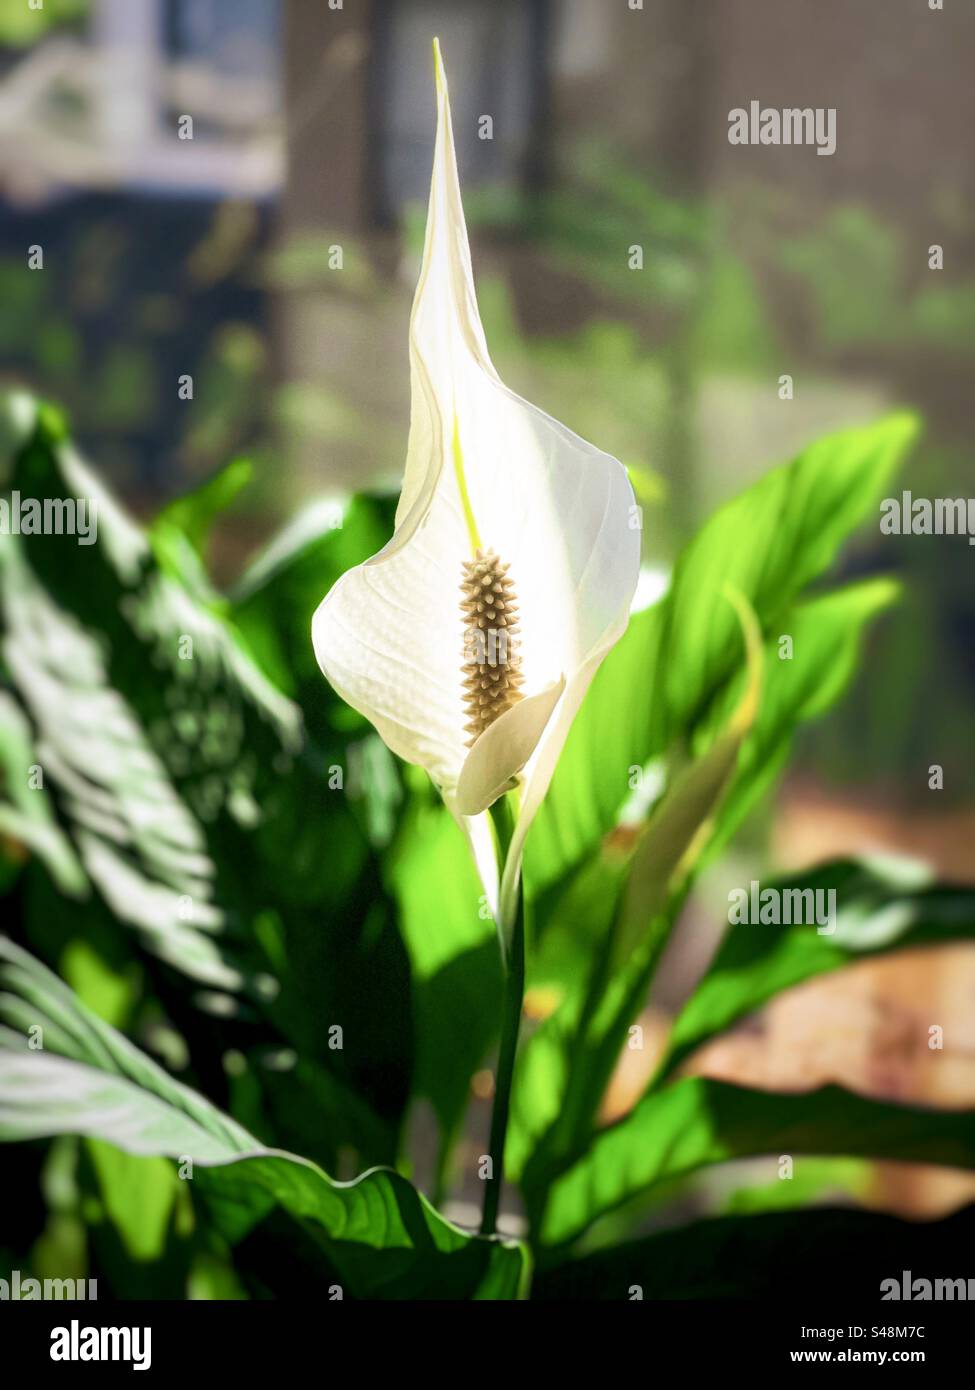 Pianta da fiore Peace Lily/Spathiphyllum all'interno, contro la vista dalla finestra. Concentrati sul primo piano. Foto Stock